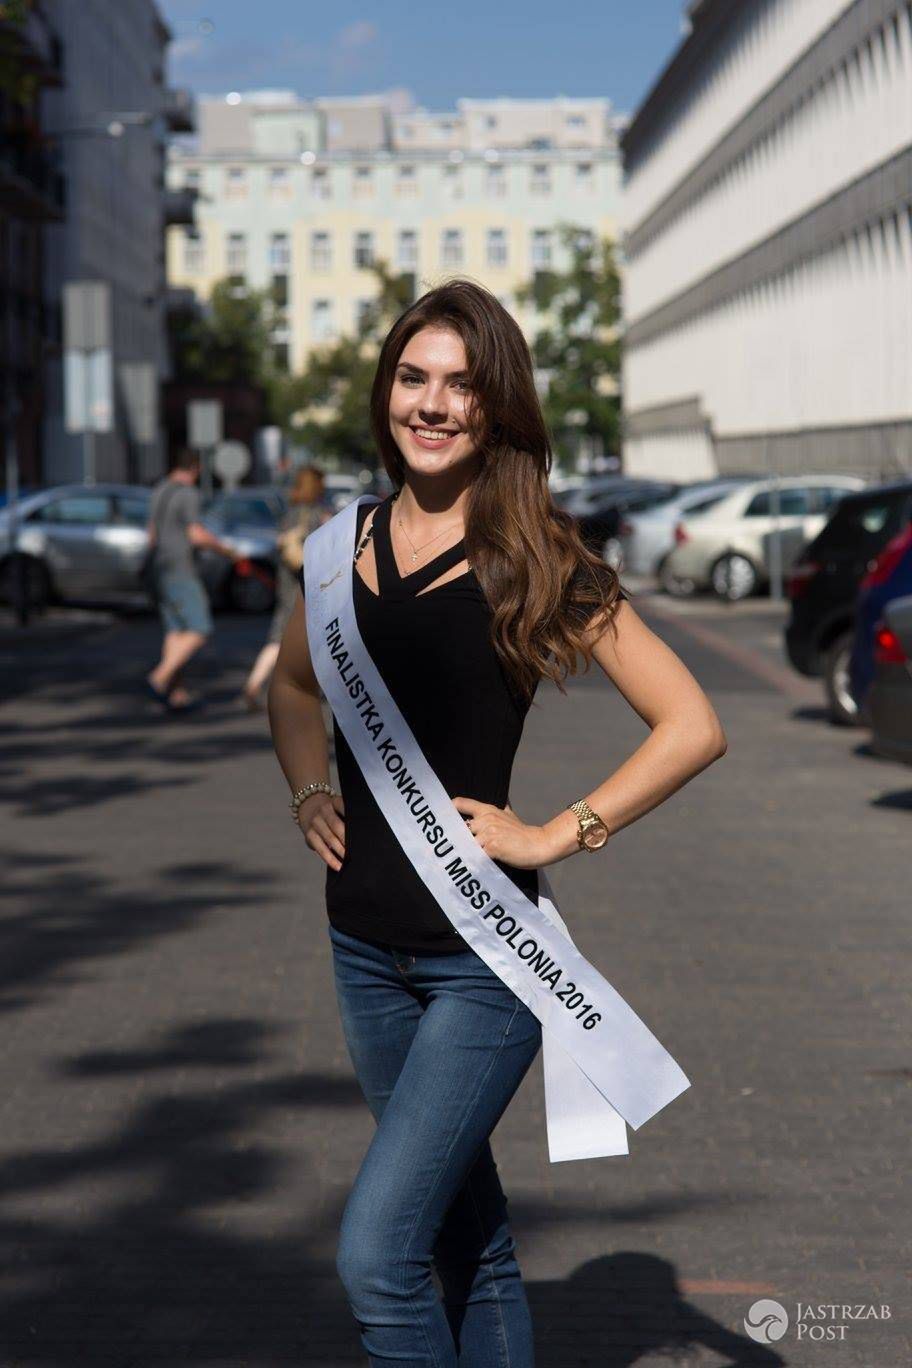 Uczestniczka konkursu Miss Polonia 2016: KINGA ZABIELSKA, Mońki, woj. podlaskie 18 lat, wzrost 173 cm (fot. Facebook.com/OfficialMissPolonia)